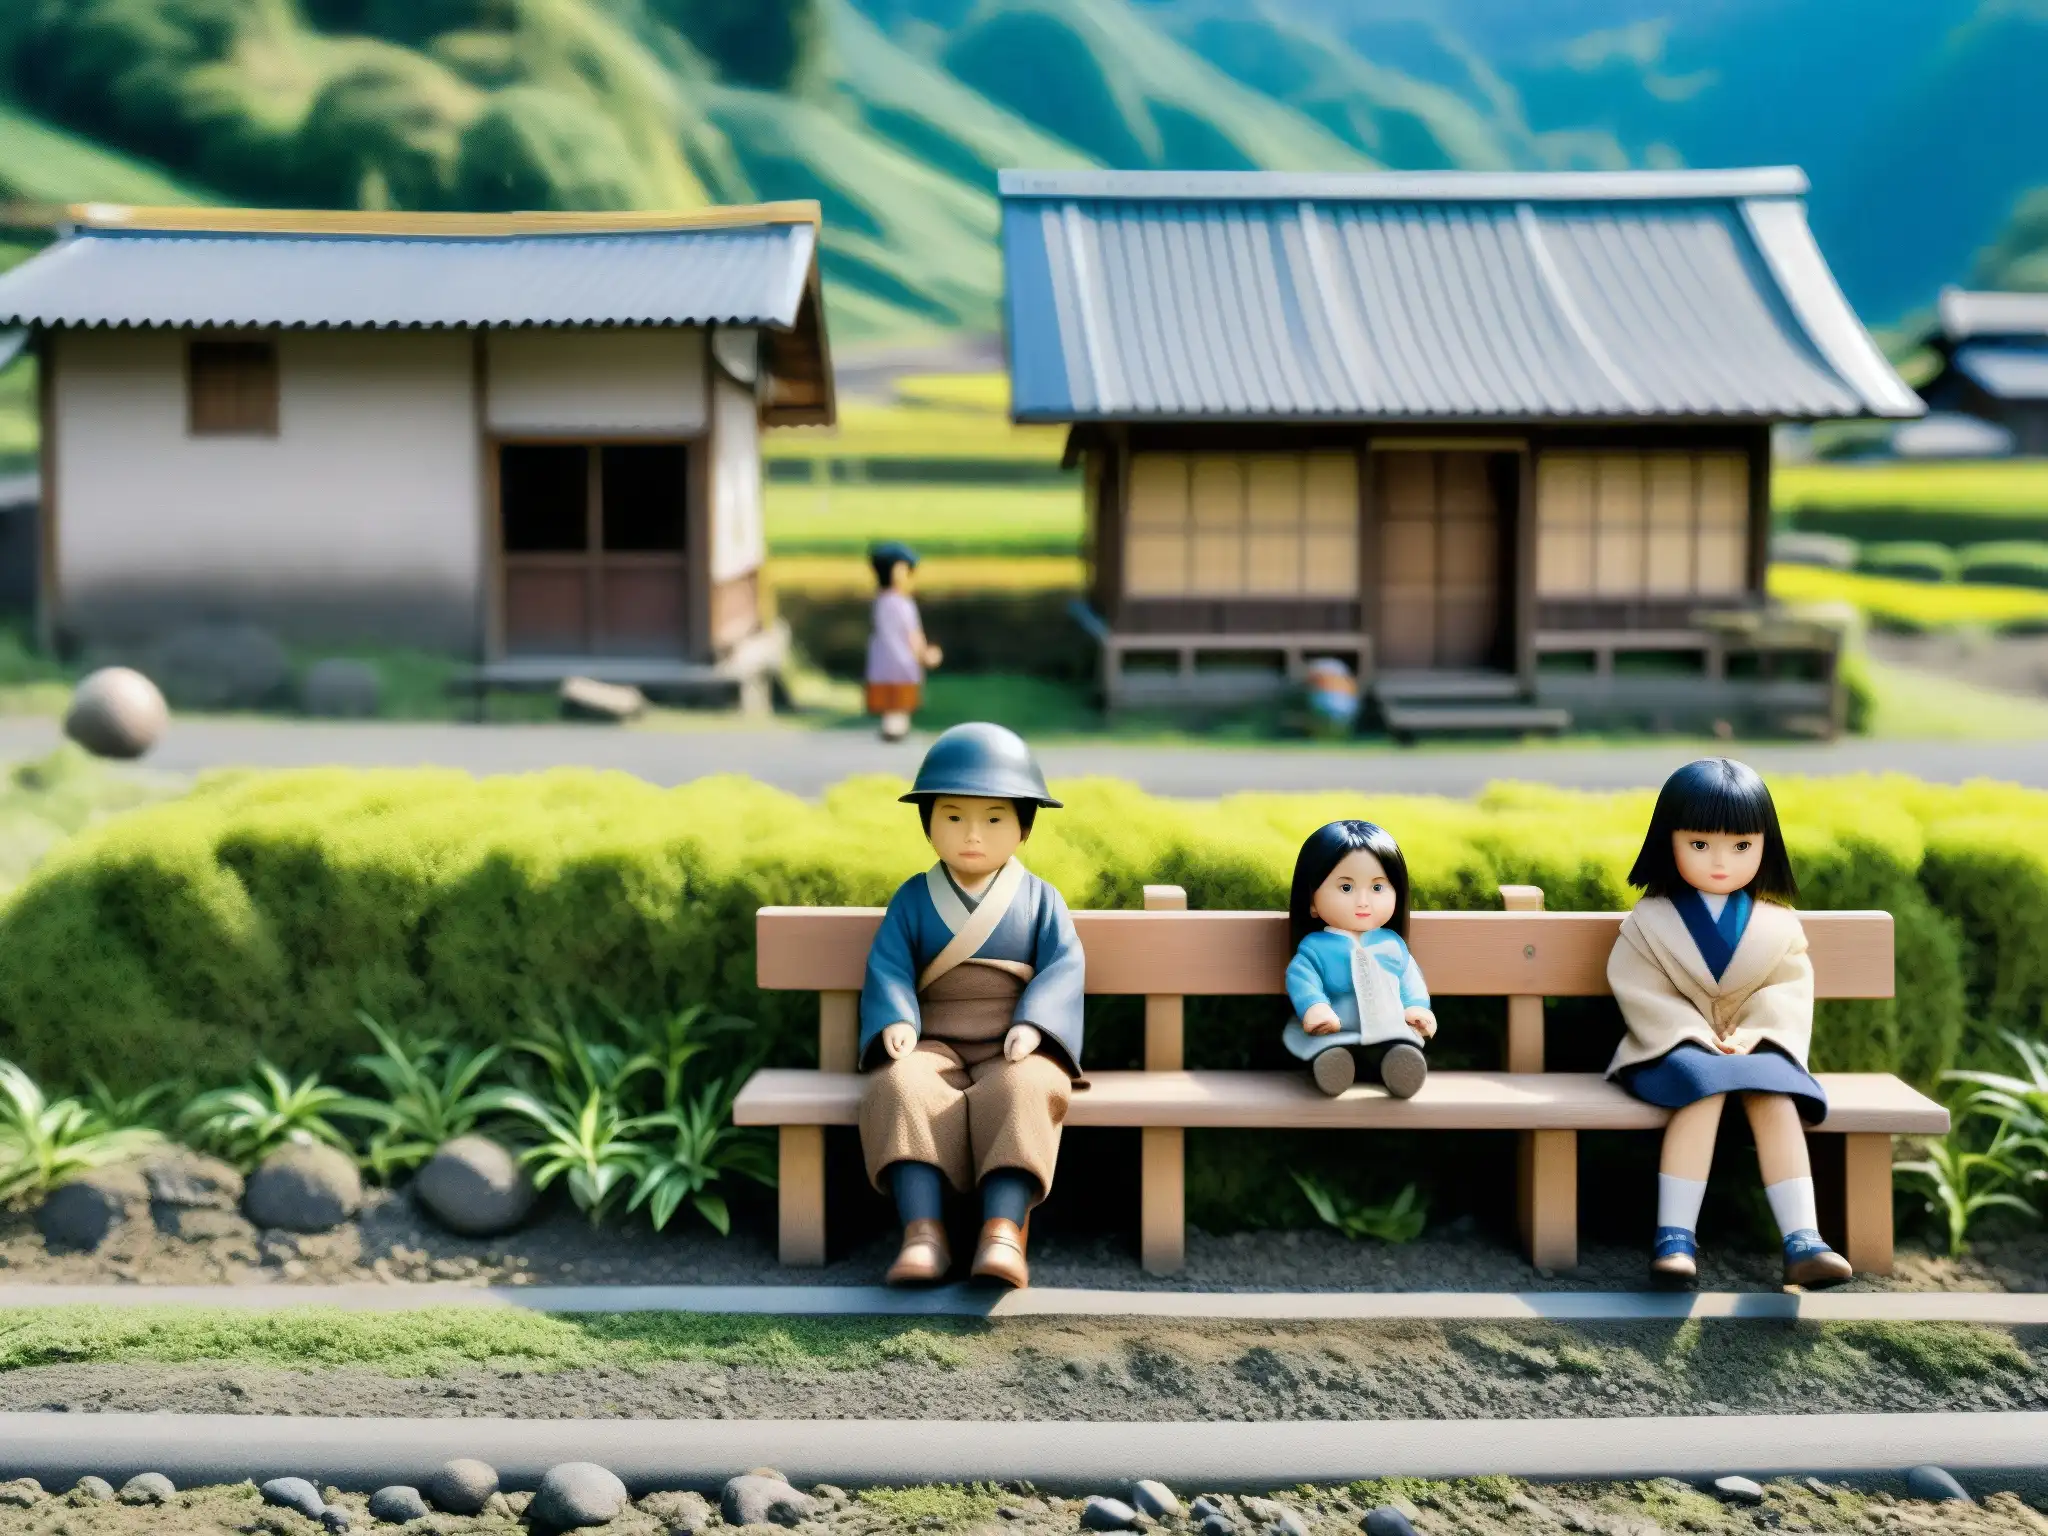 Imagen detallada de las calles de Nagoro, un pueblo en Japón, habitado por muñecas realistas en escenarios cotidianos